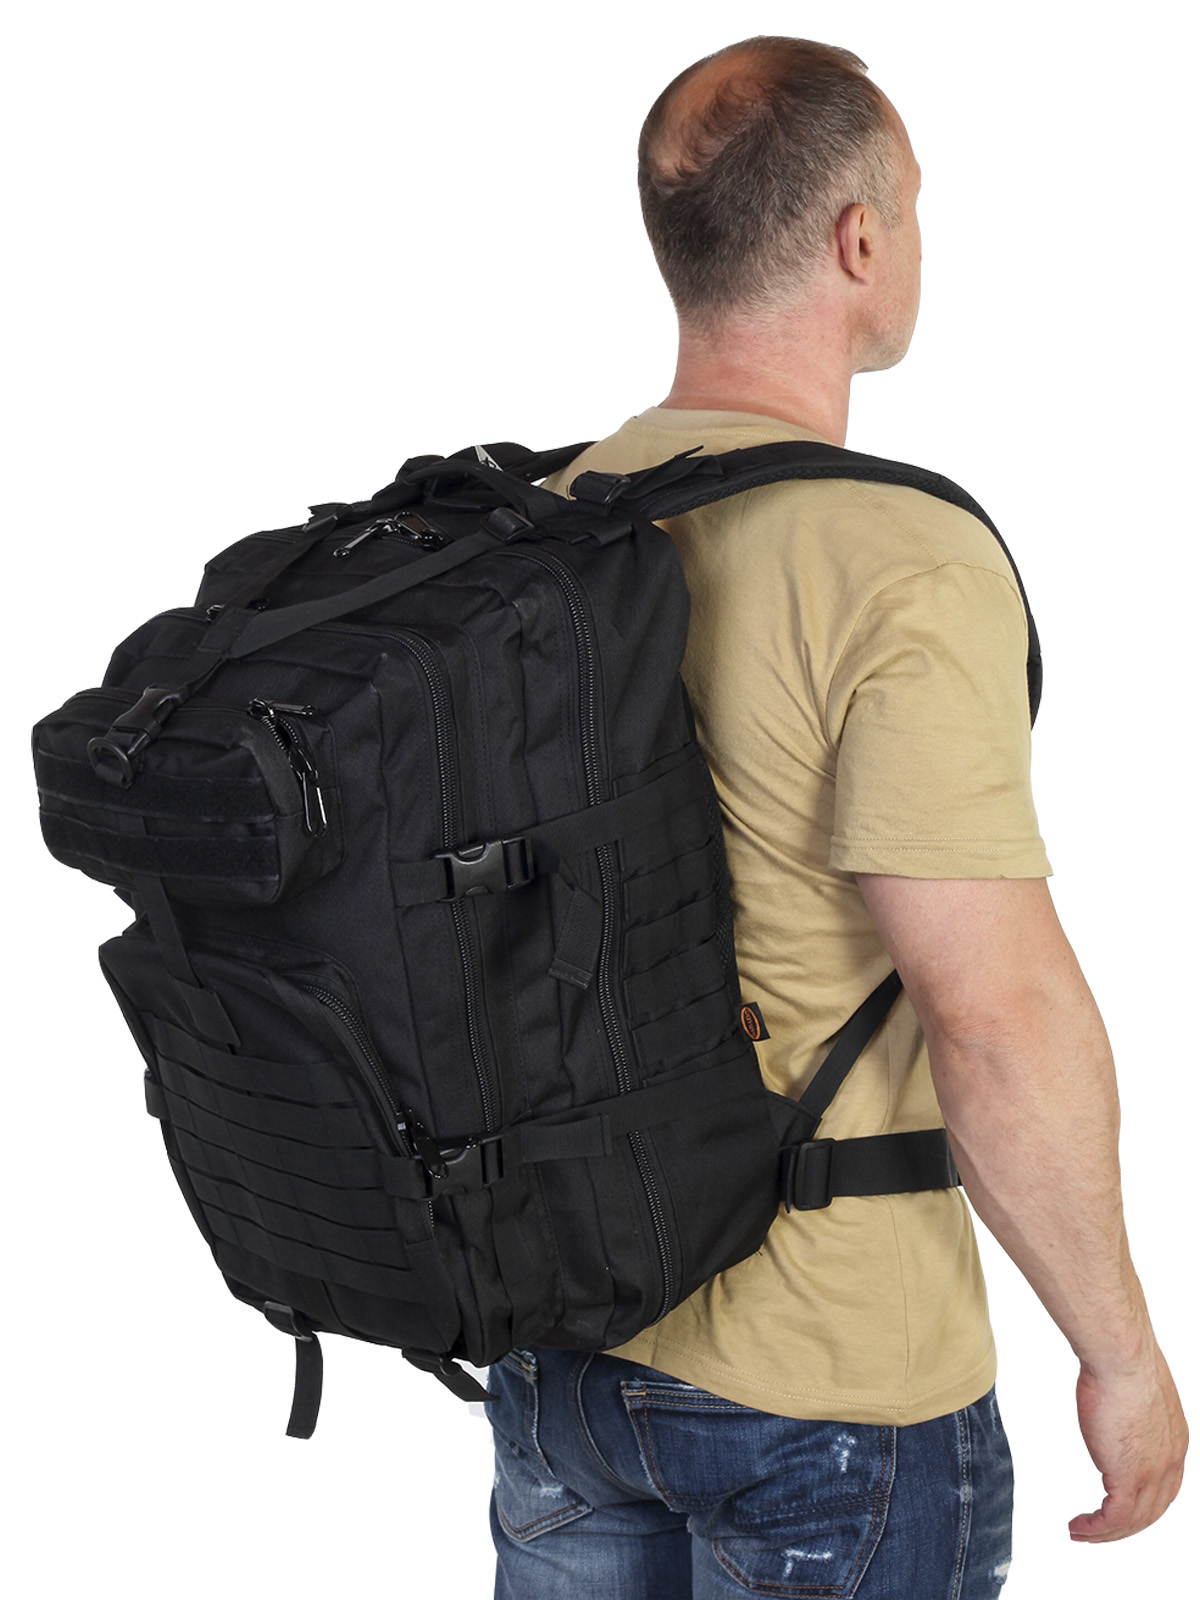 Лёгкий рюкзак для походов недорого с доставкой